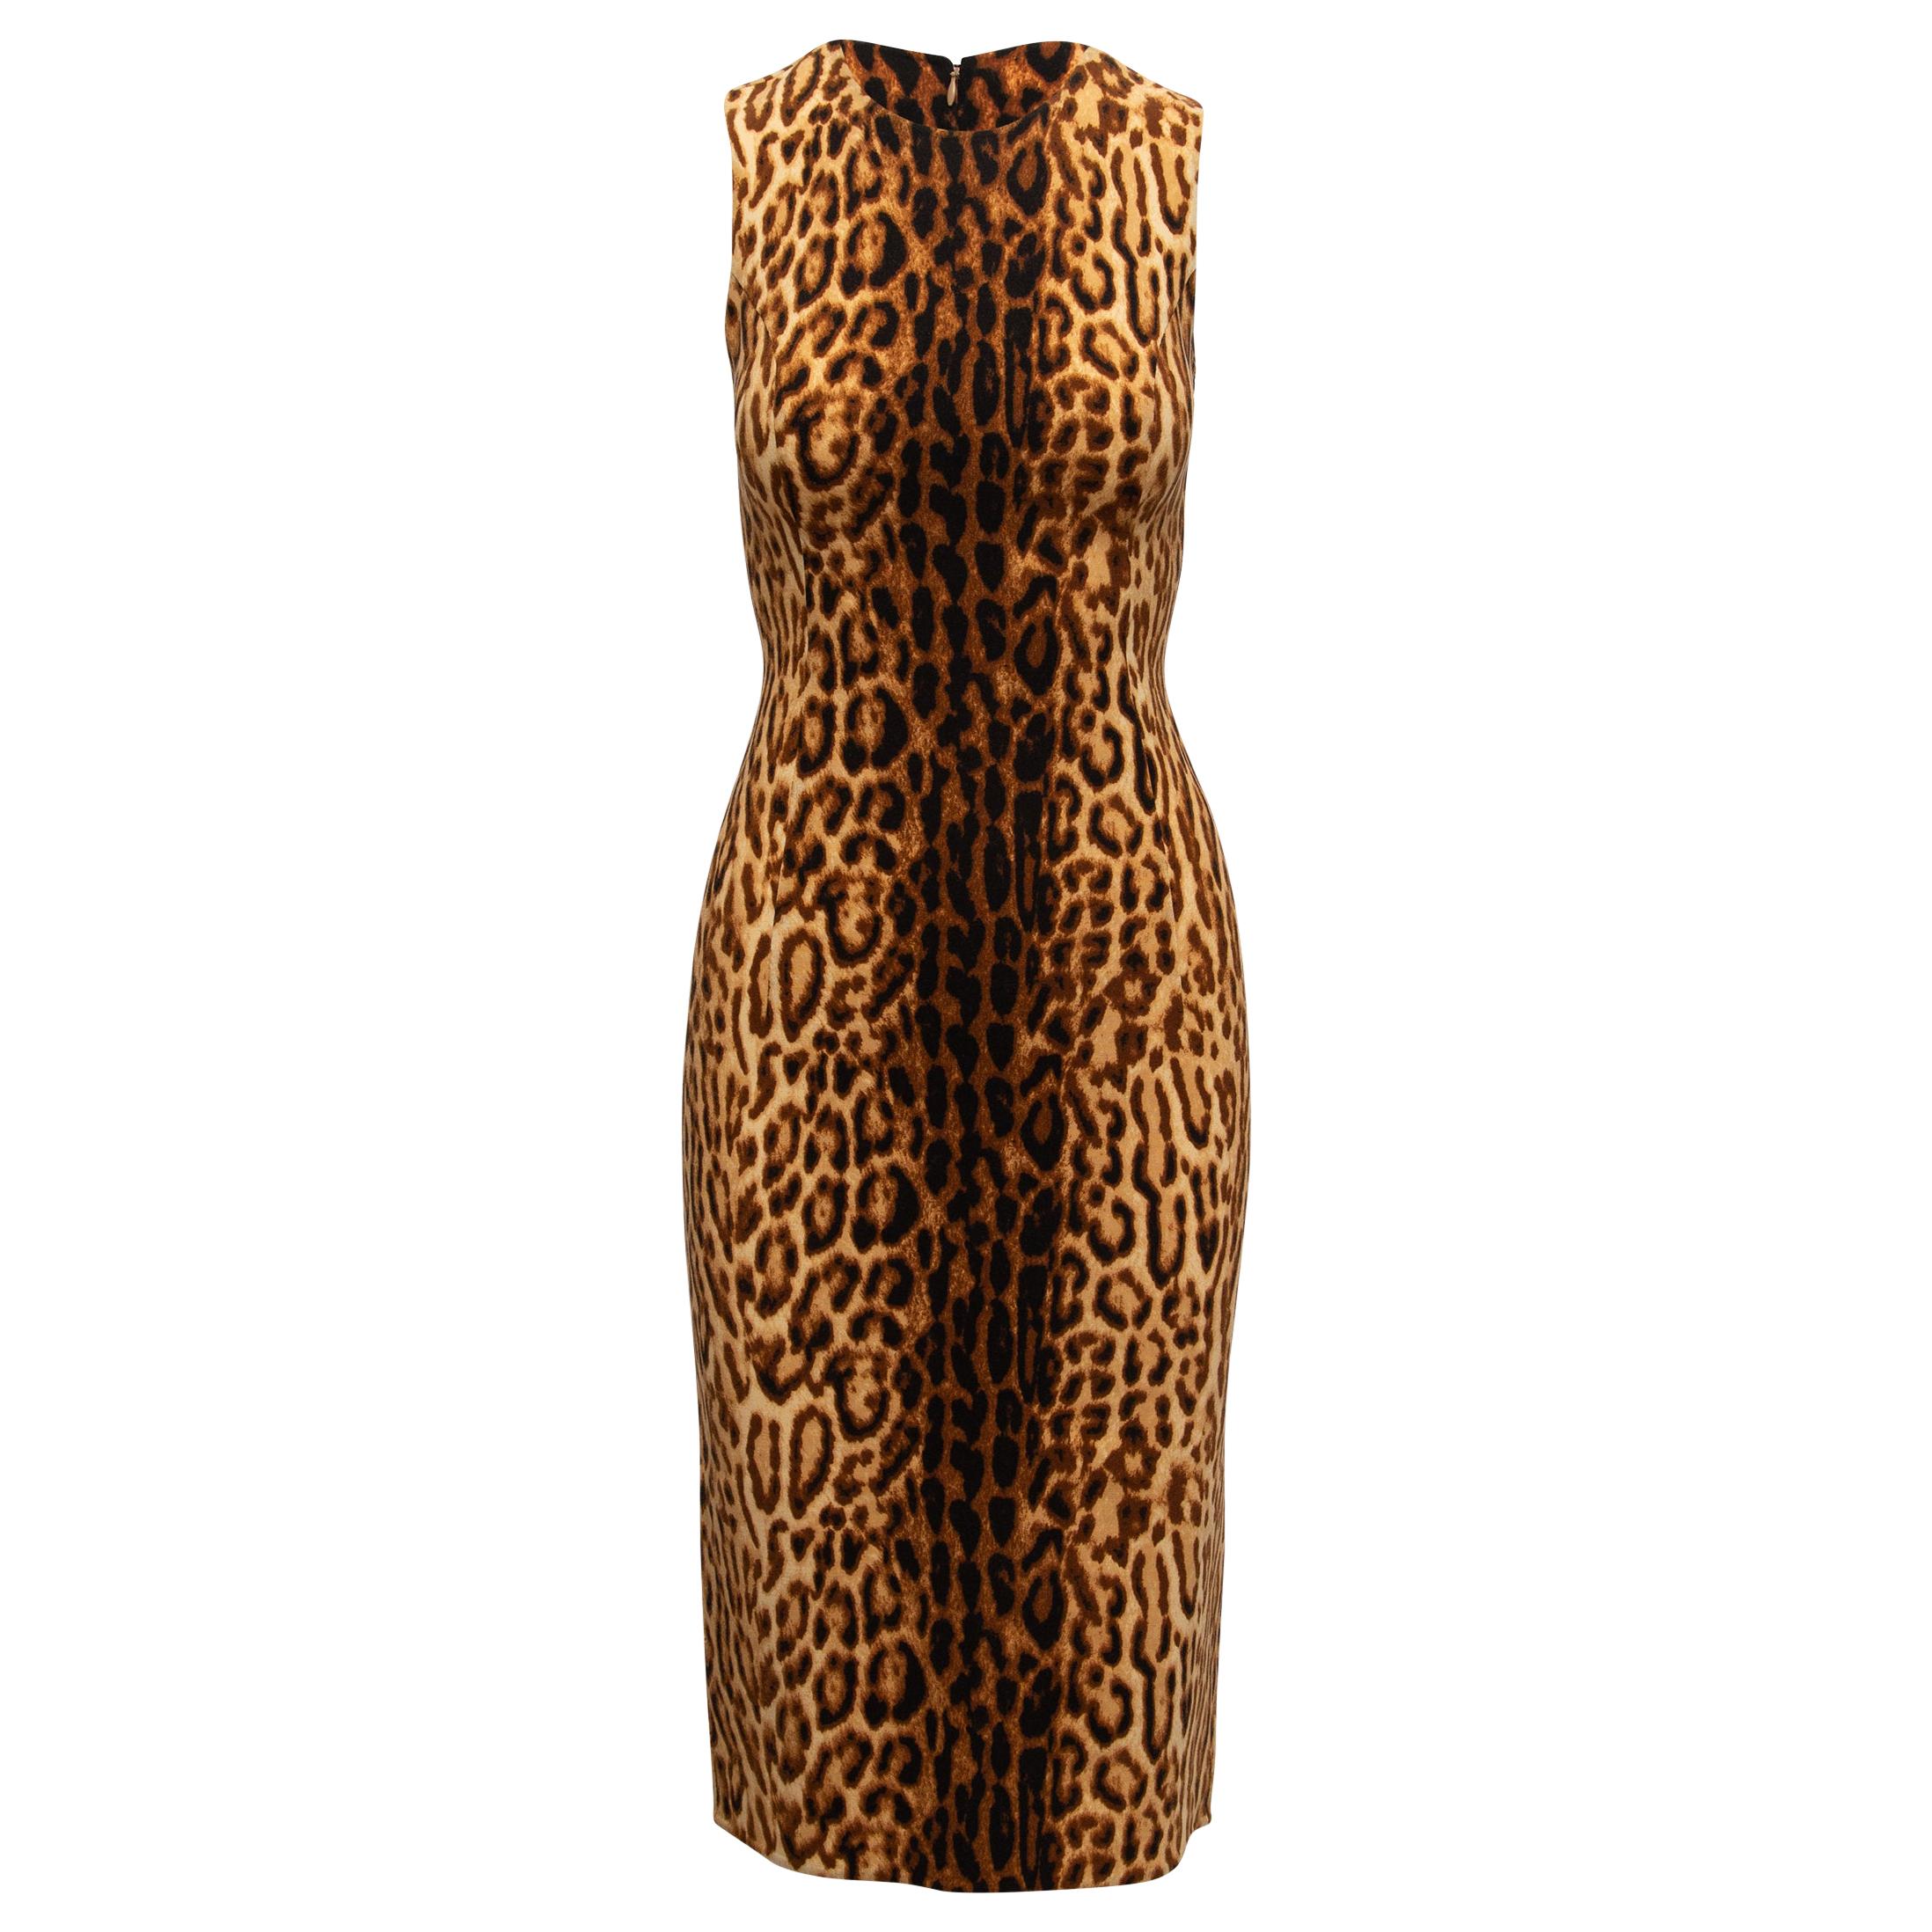 Celine Tan & Black Leopard Print Virgin Wool Dress